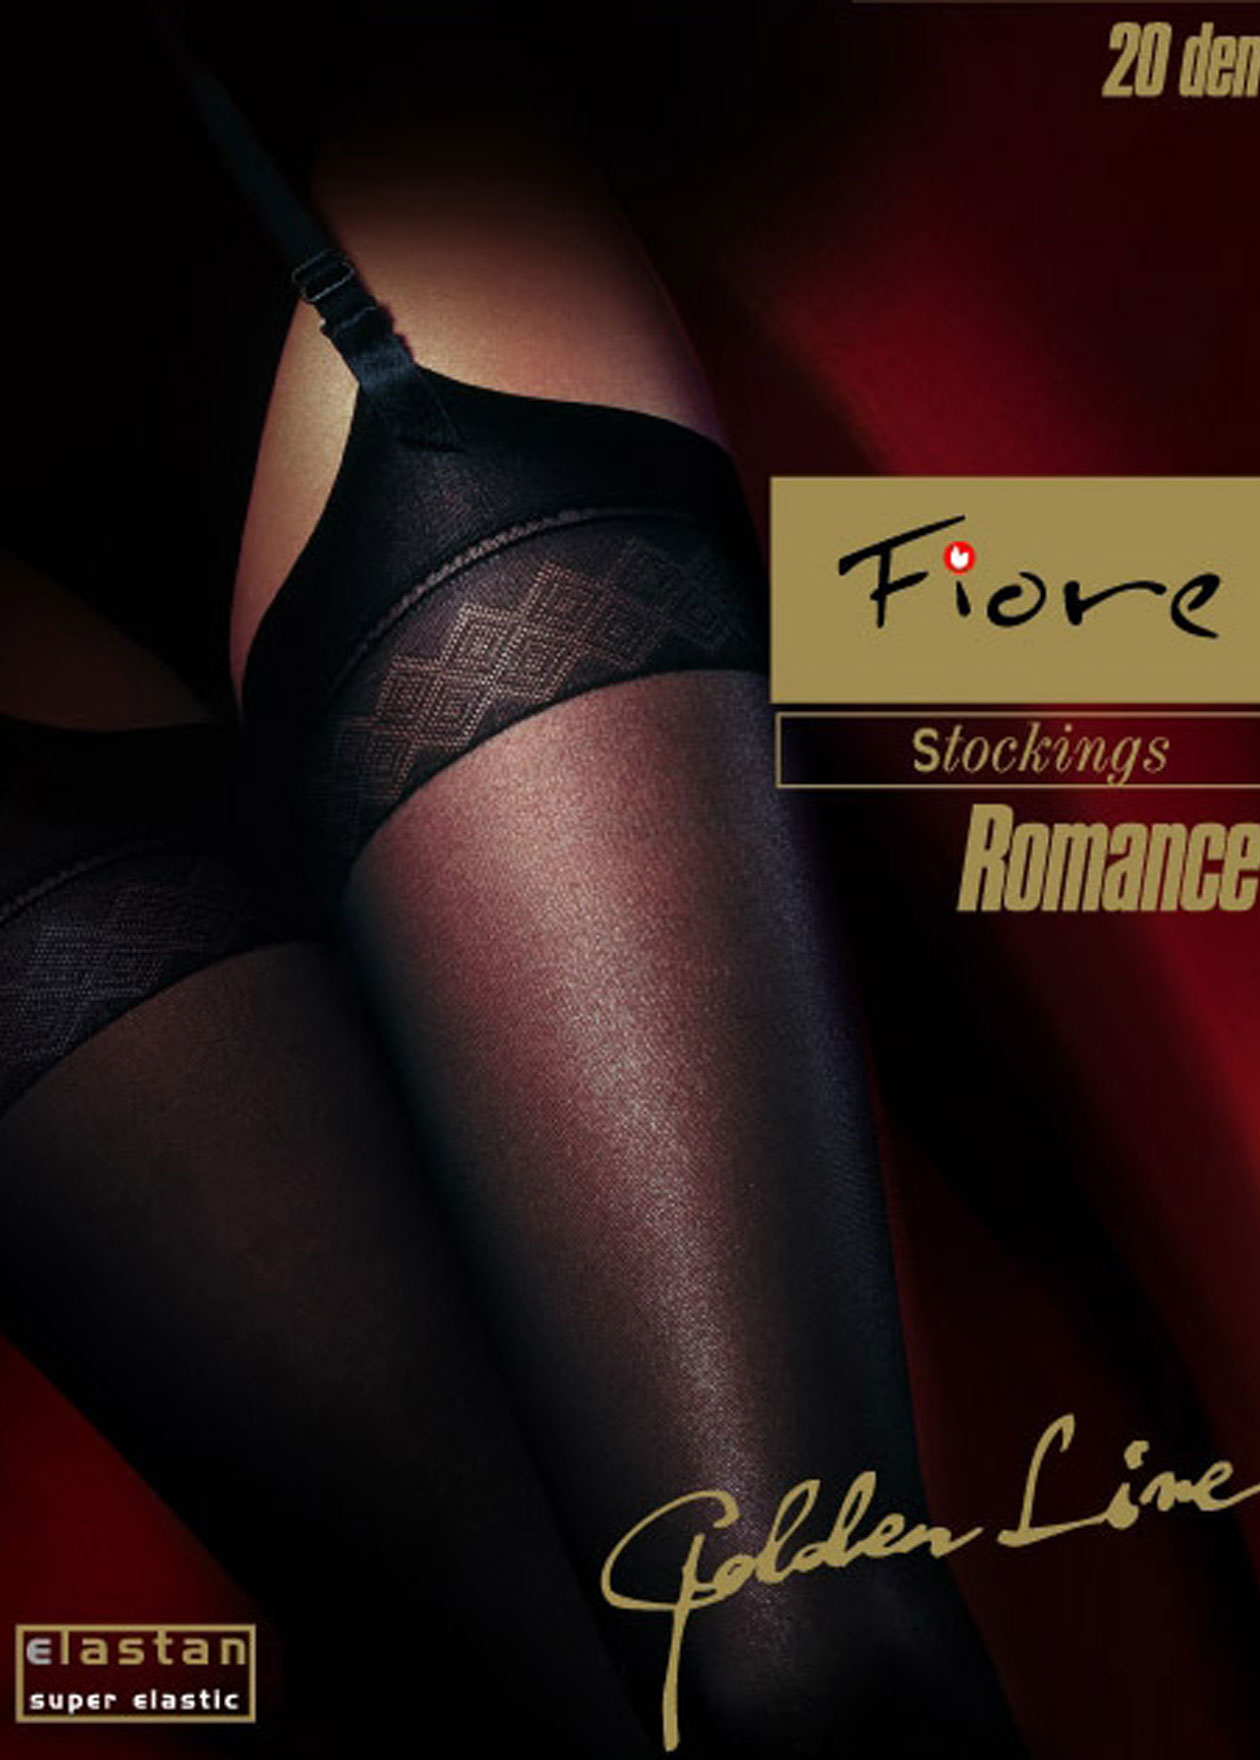 Fiore Romance 20